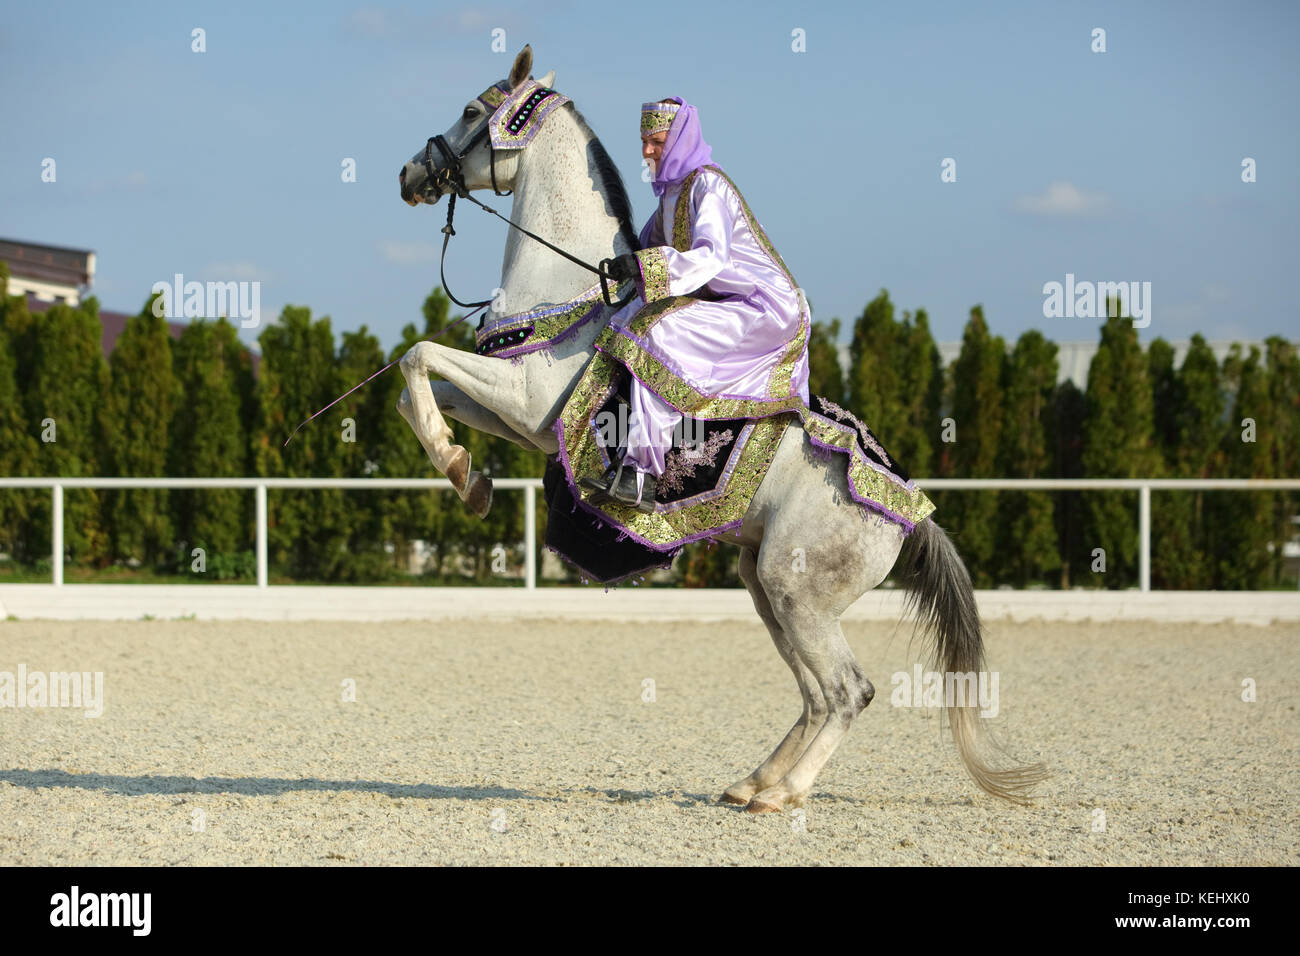 Cavalière dans les vêtements orientaux sur l'arrière d'un cheval arabe d'élevage Banque D'Images